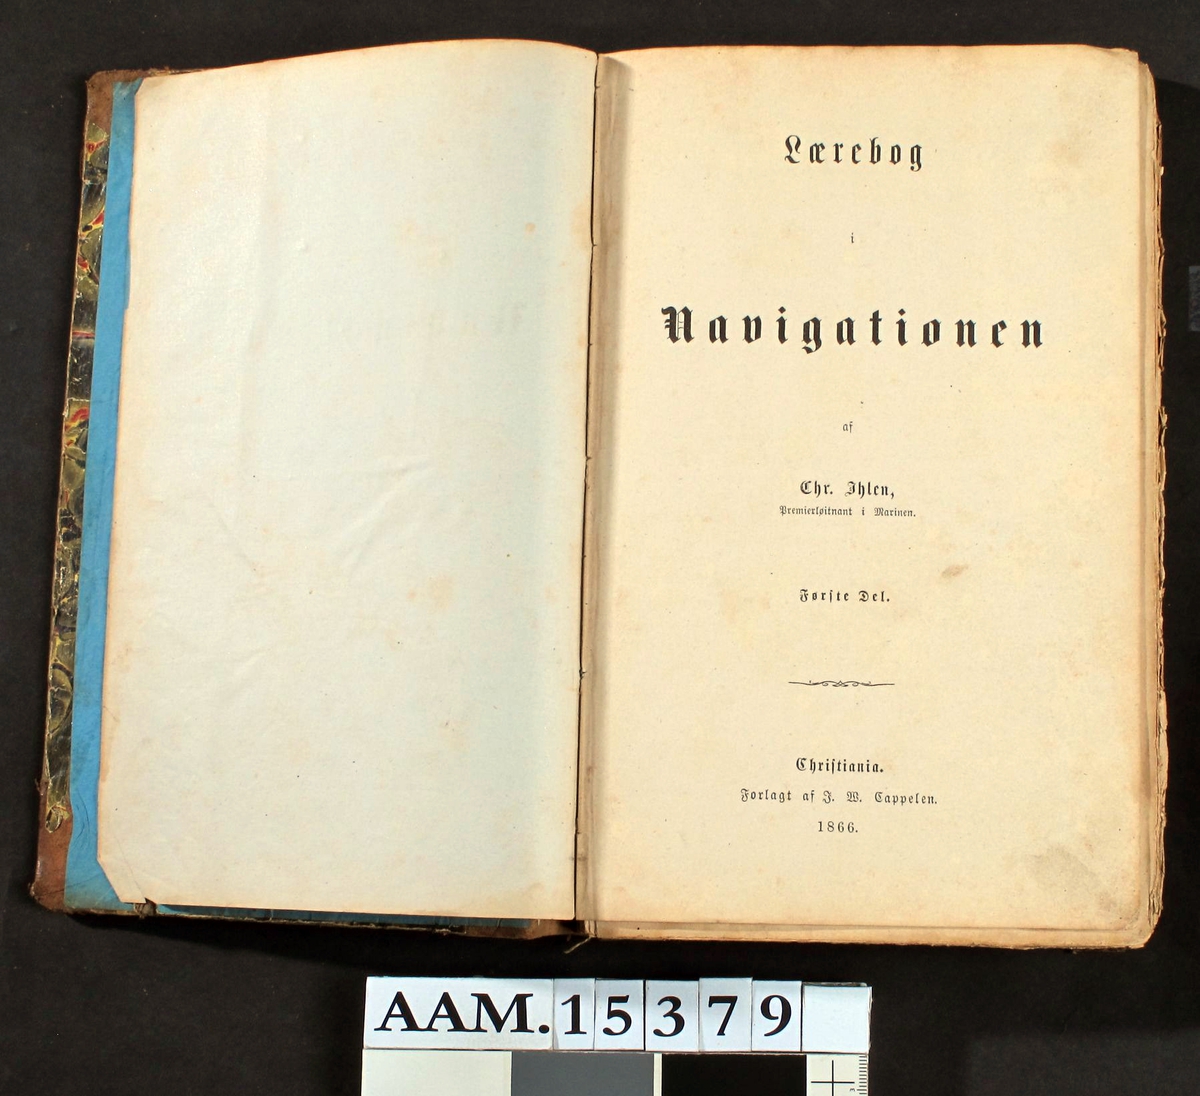 Chr. Ihlen, Lærebog i Navigationen,   II, Chra. 1866.  På forsatspapiret signert:   Jens Lassen 1/11 66.  Brun skinnrygg, brunmarmorert, slitt bind.  (1833 - 1908).  